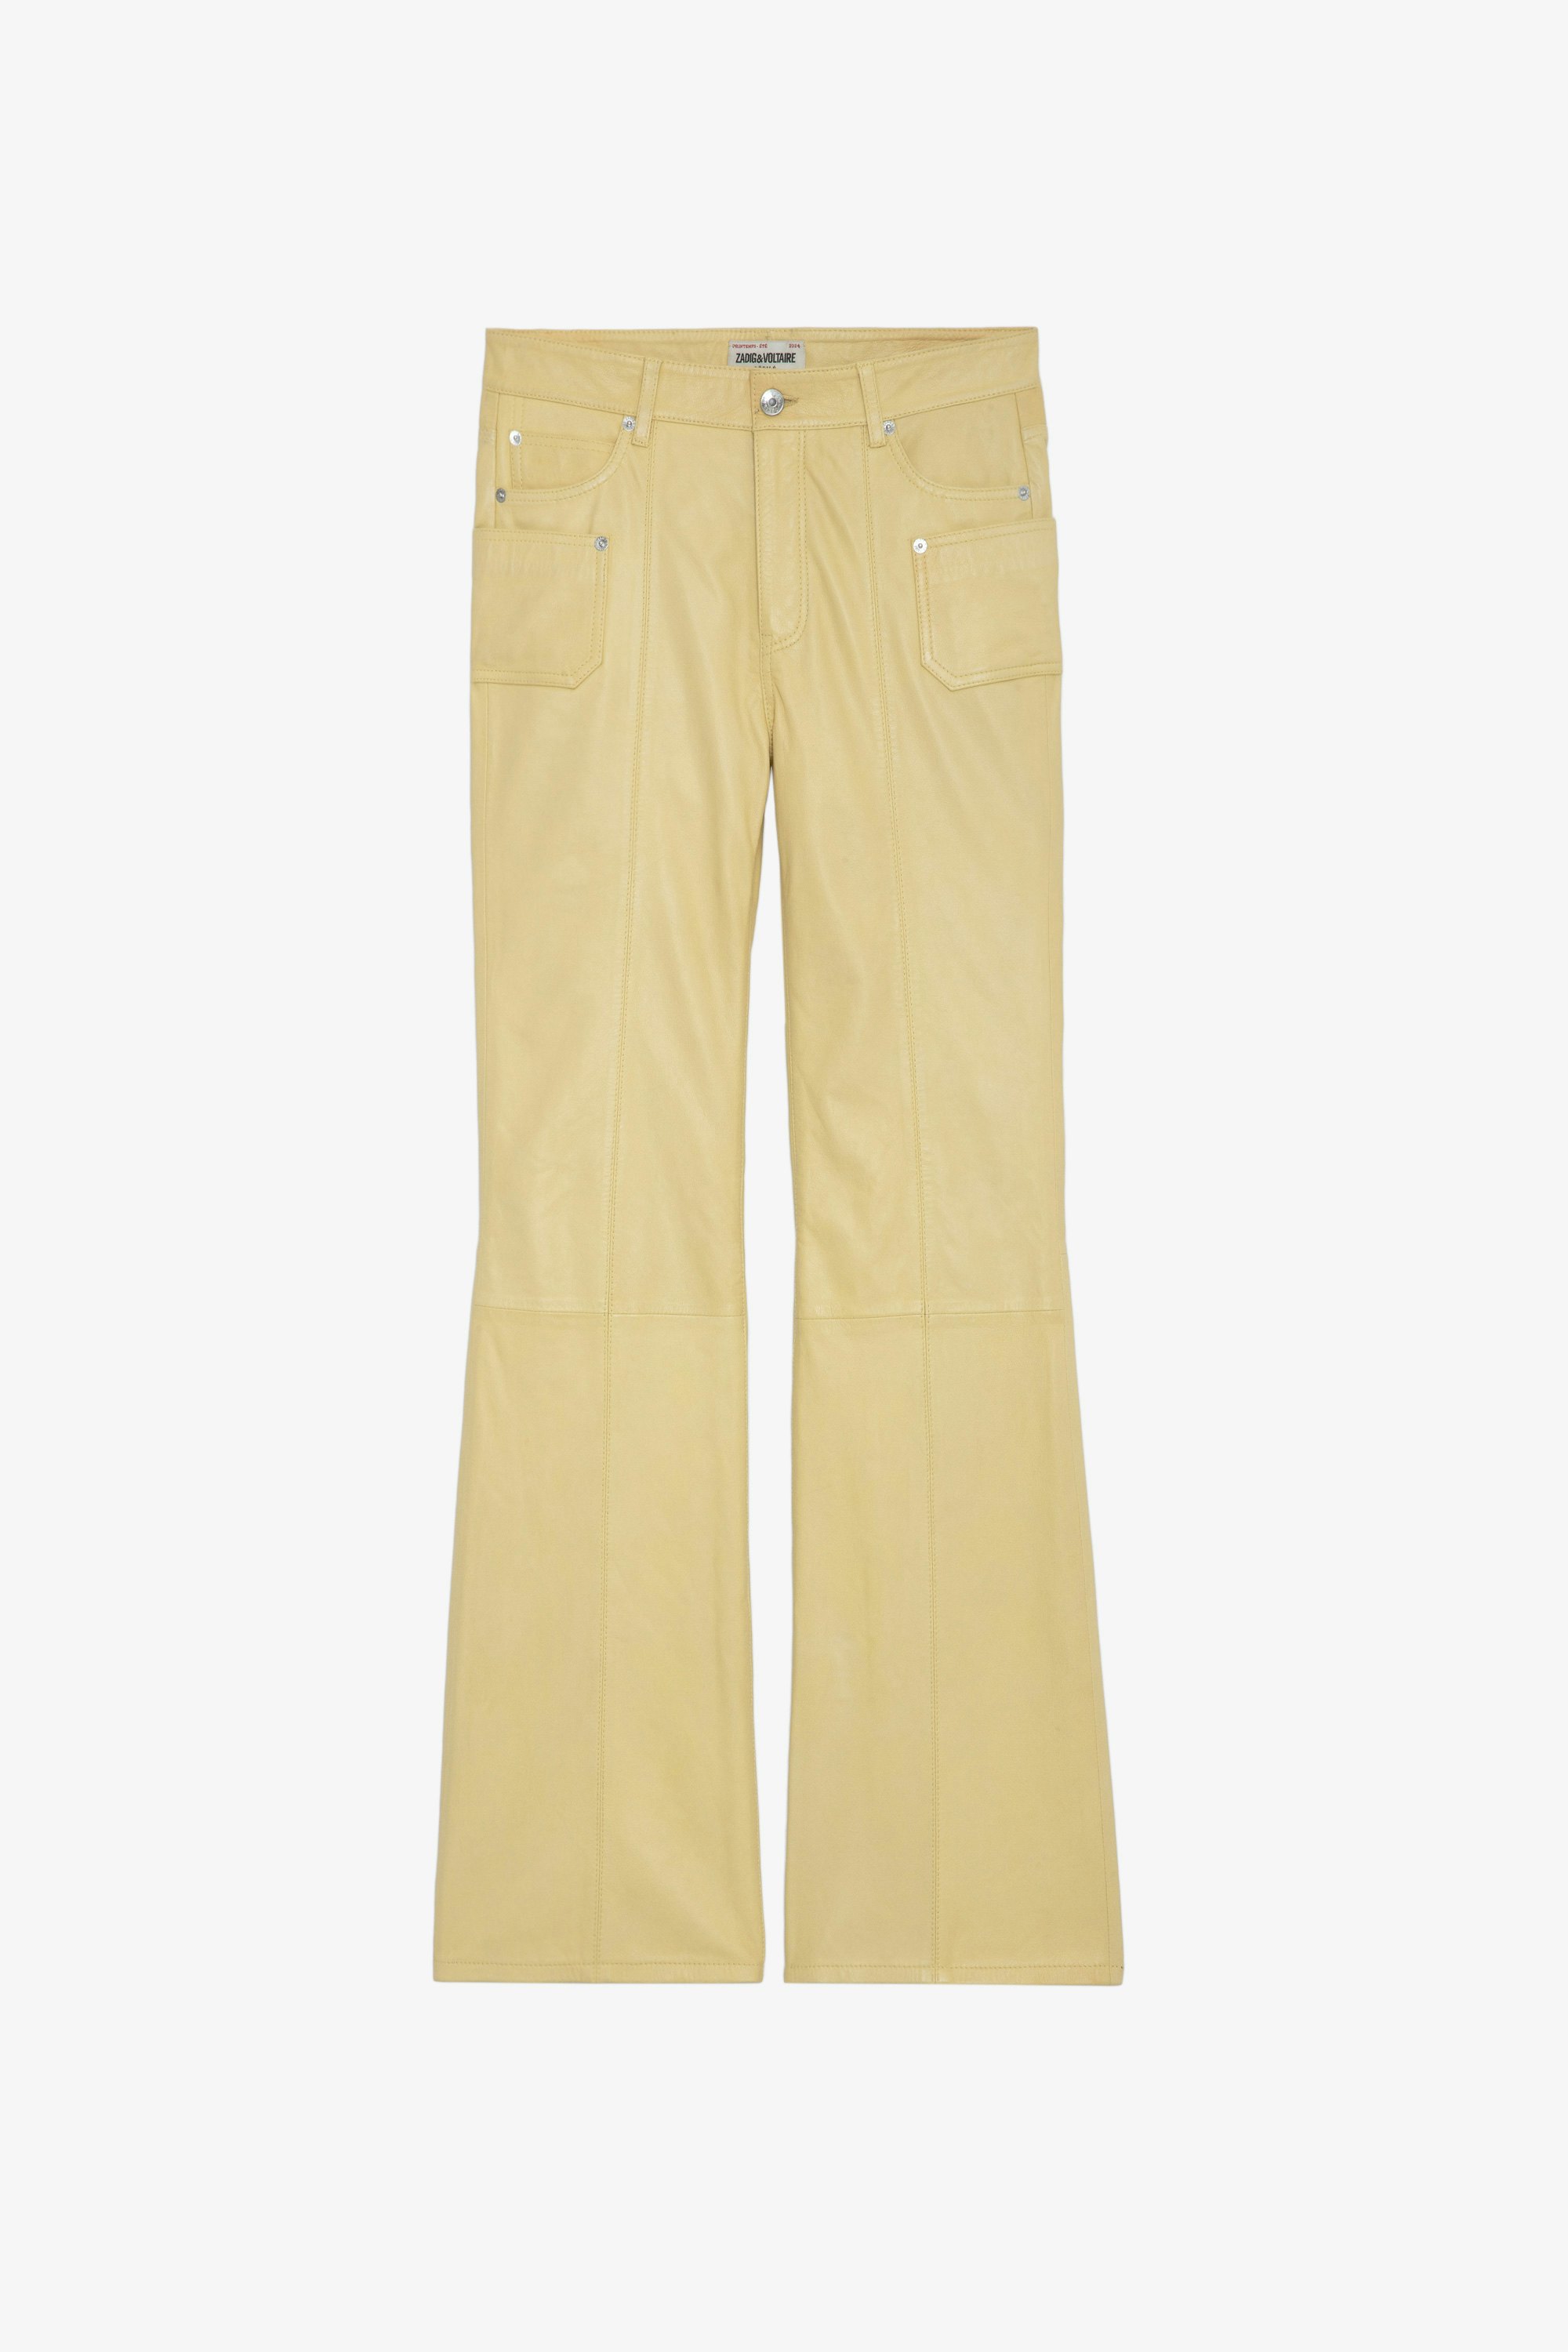 Pantalón de Piel Elvir - Pantalón amarillo claro de piel lisa con bajos acampanados y bolsillos.